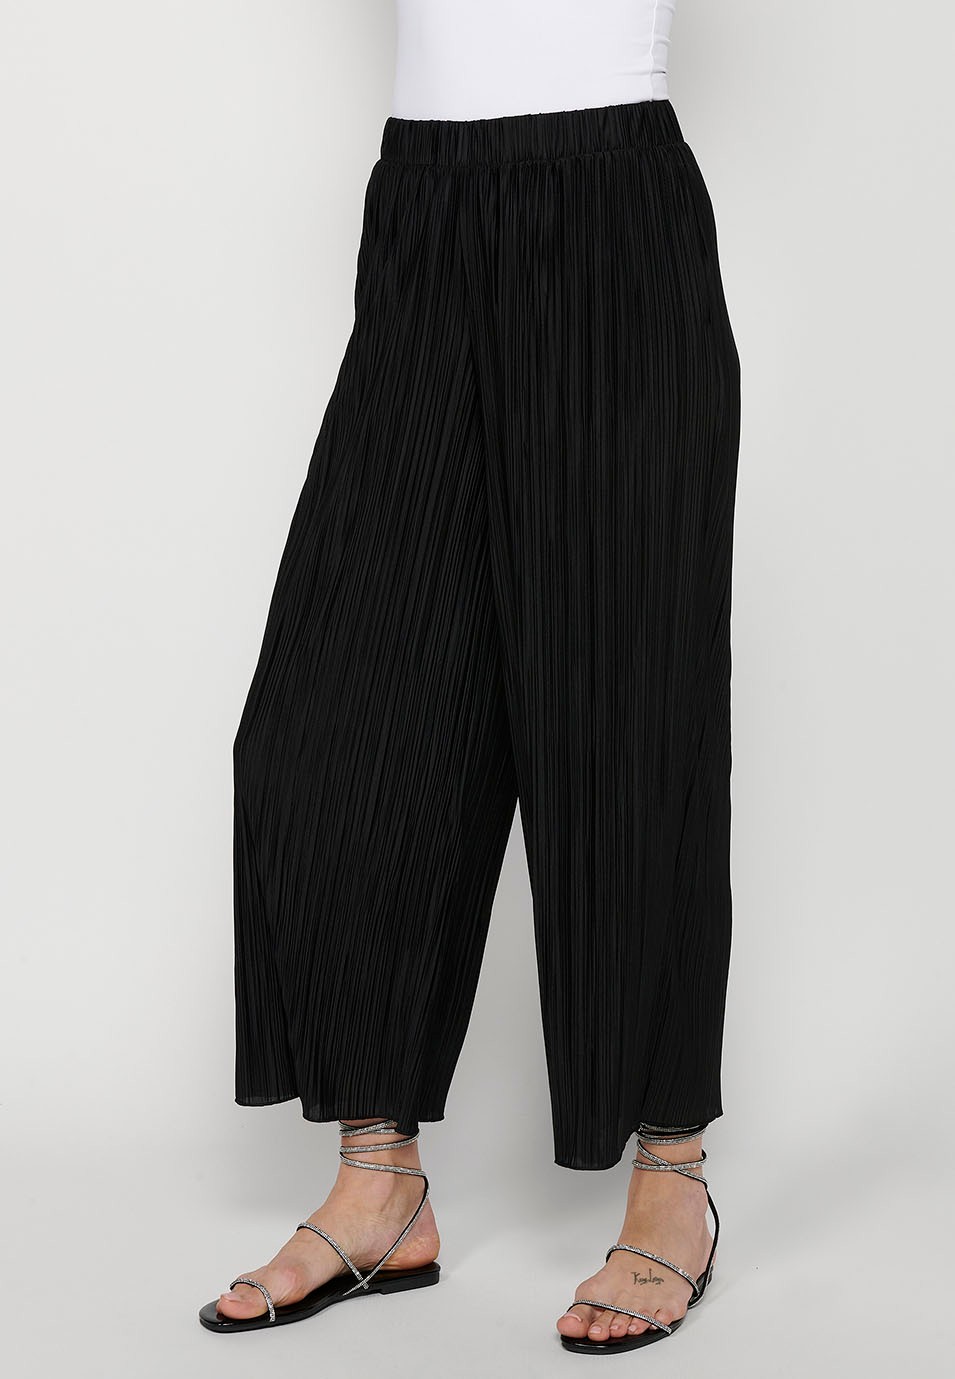 Pantalons llargs lleugers, cintura engomada, tela prisada color negre per a dona